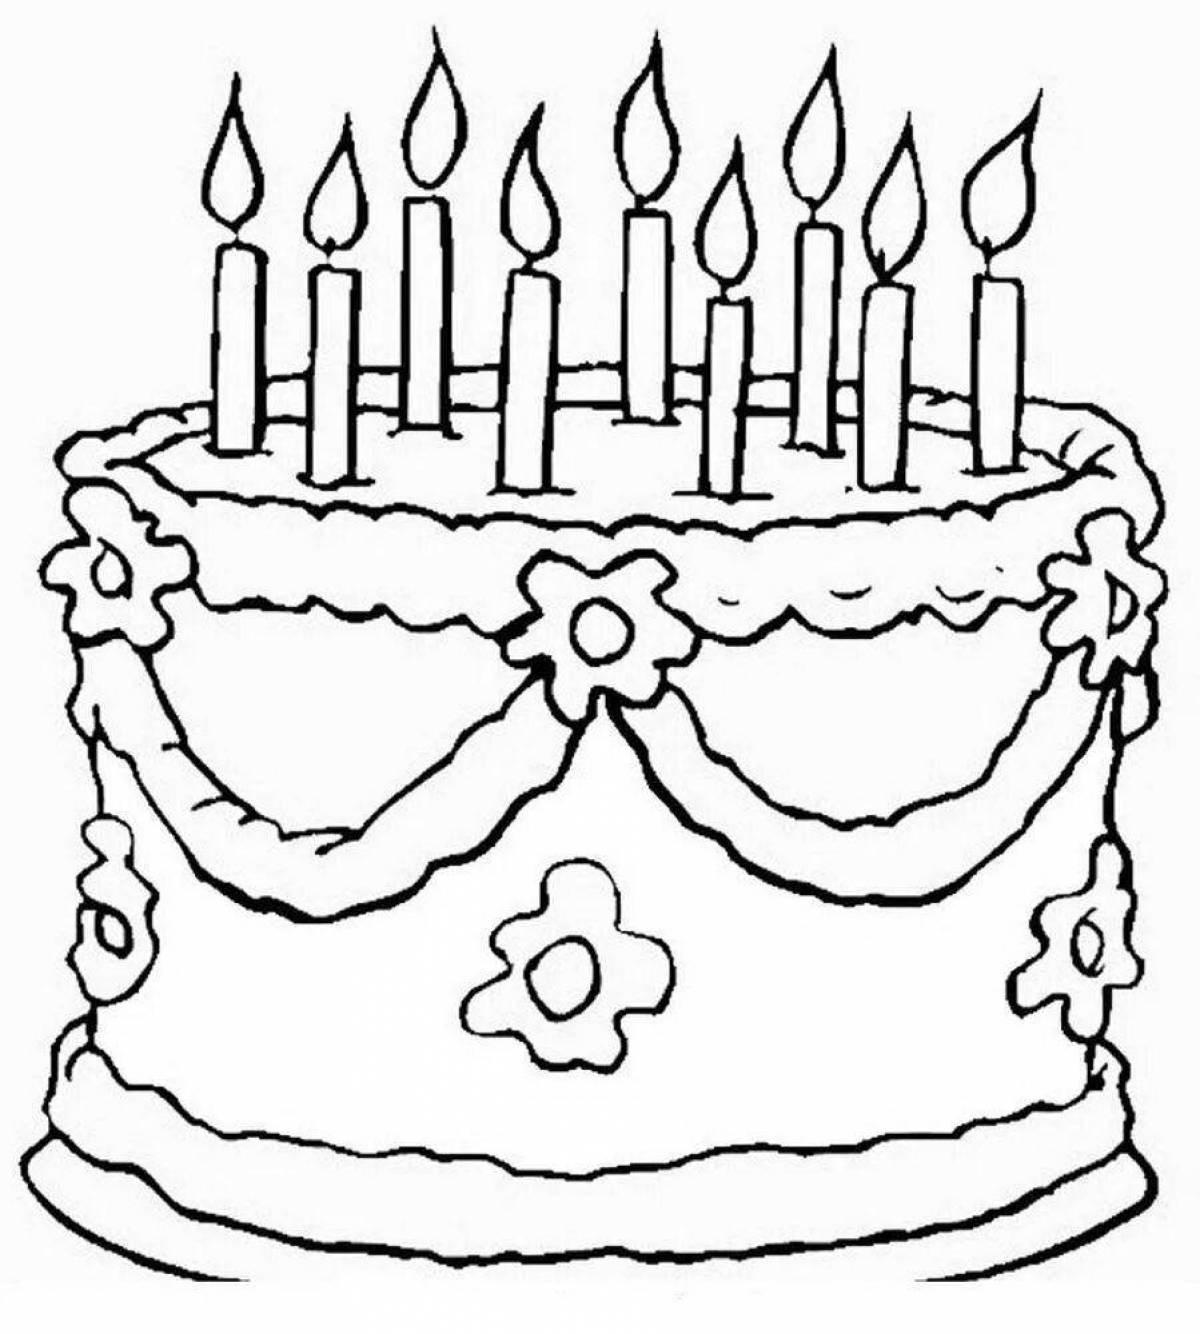 Раскраска славный торт ко дню рождения